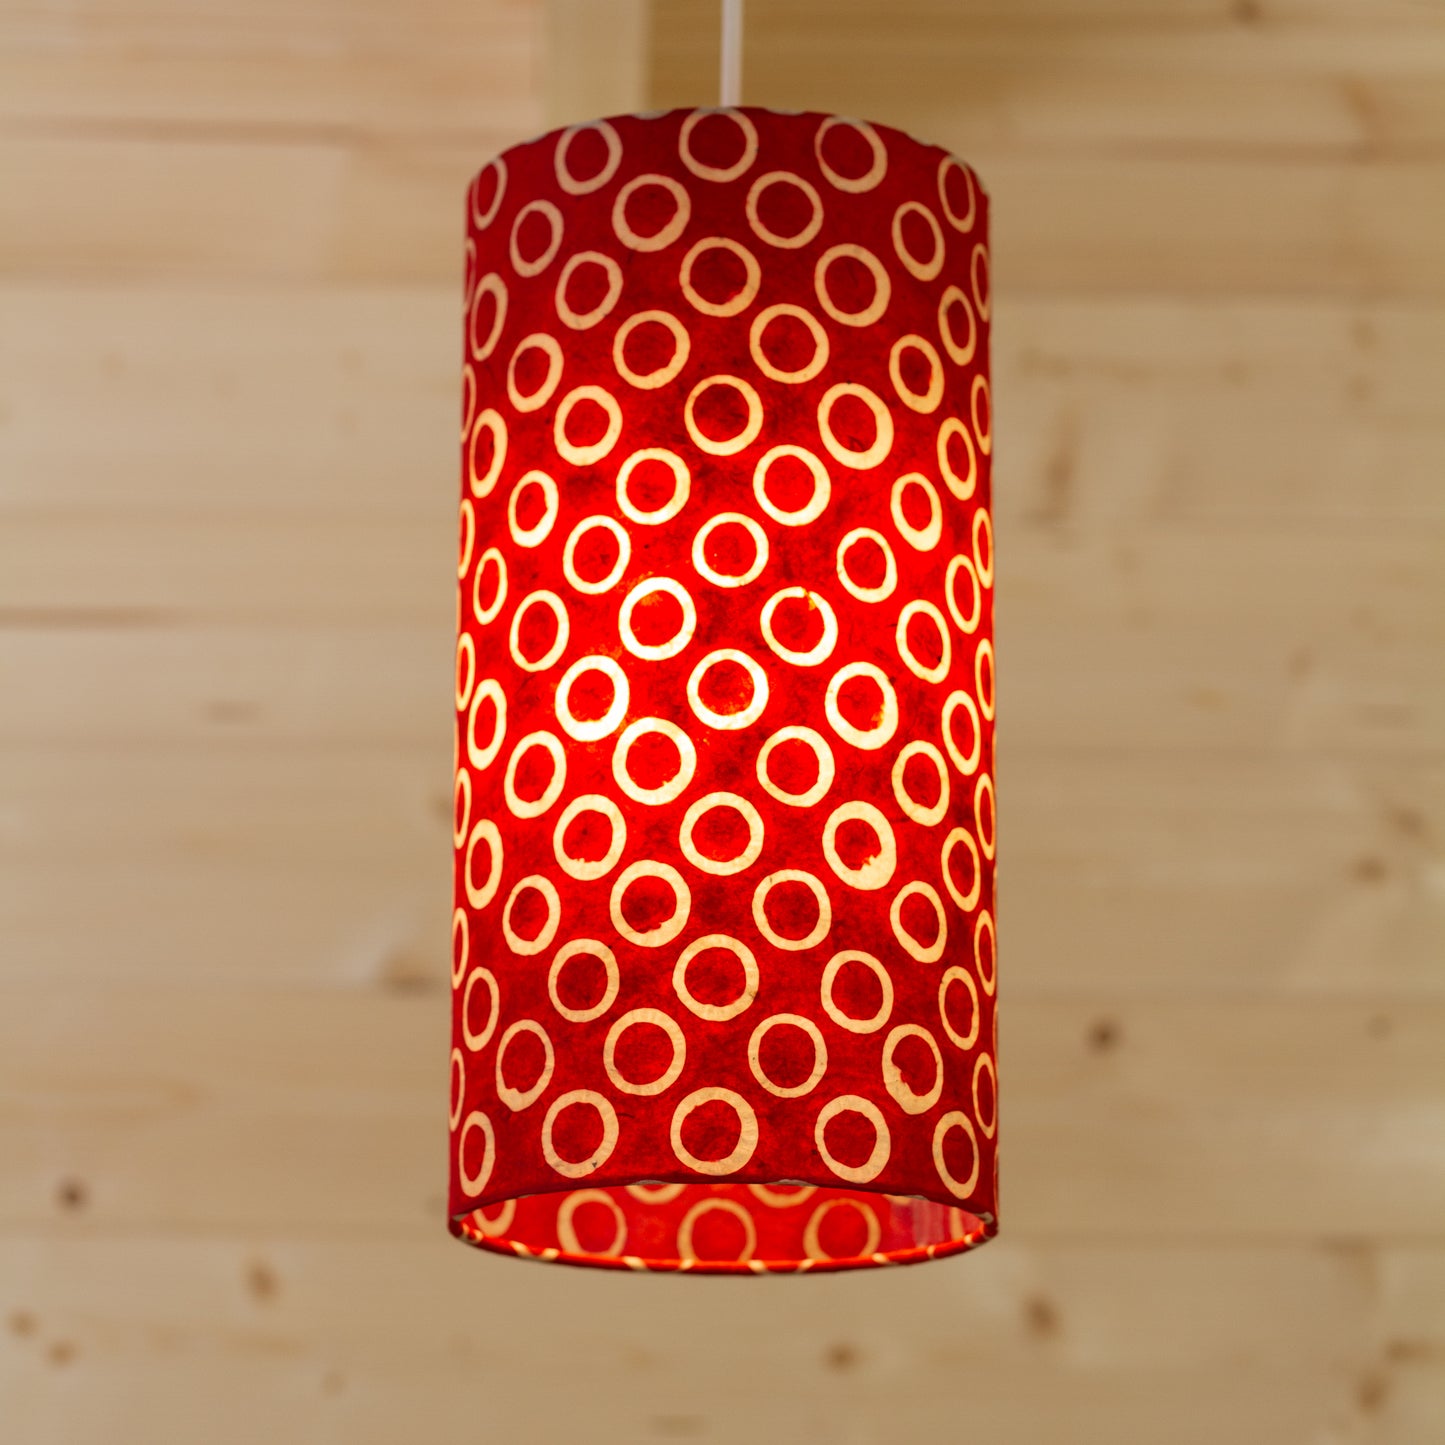 Drum Lamp Shade - P83 ~ Batik Red Circles, 15cm(diameter)